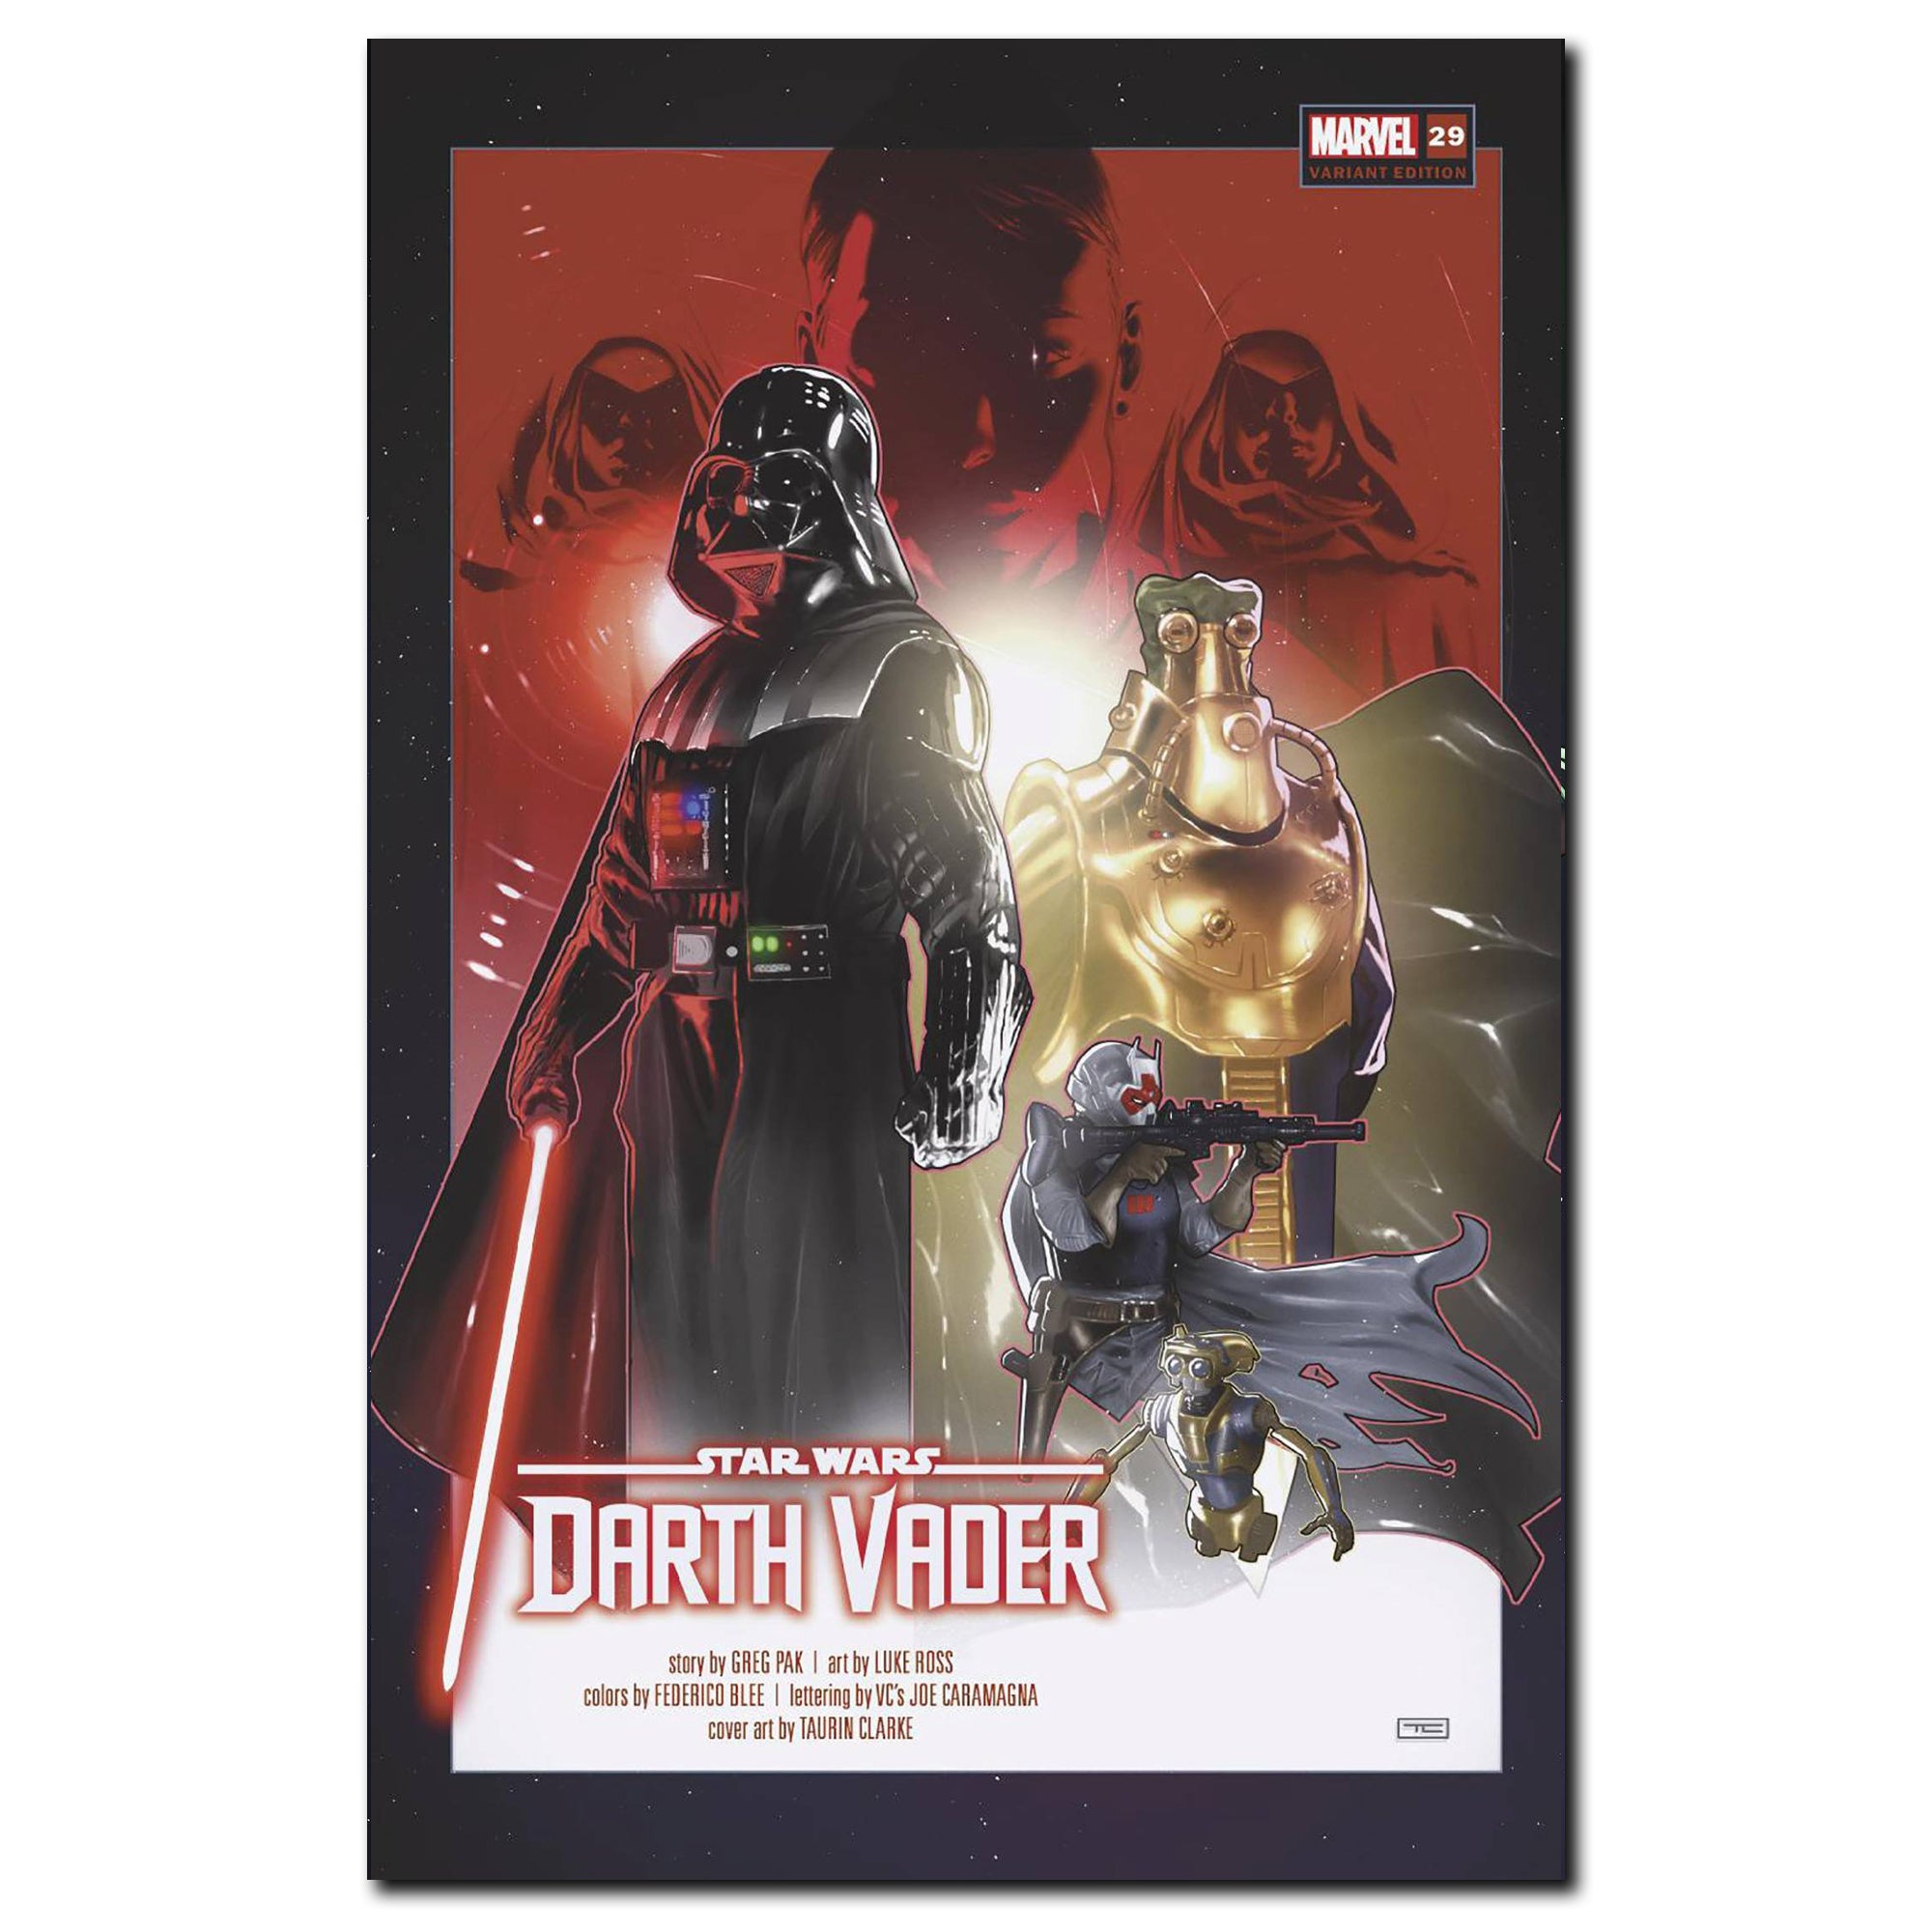 Star Wars Darth Vader #29 Cover Variant CLARKE FINALSALE